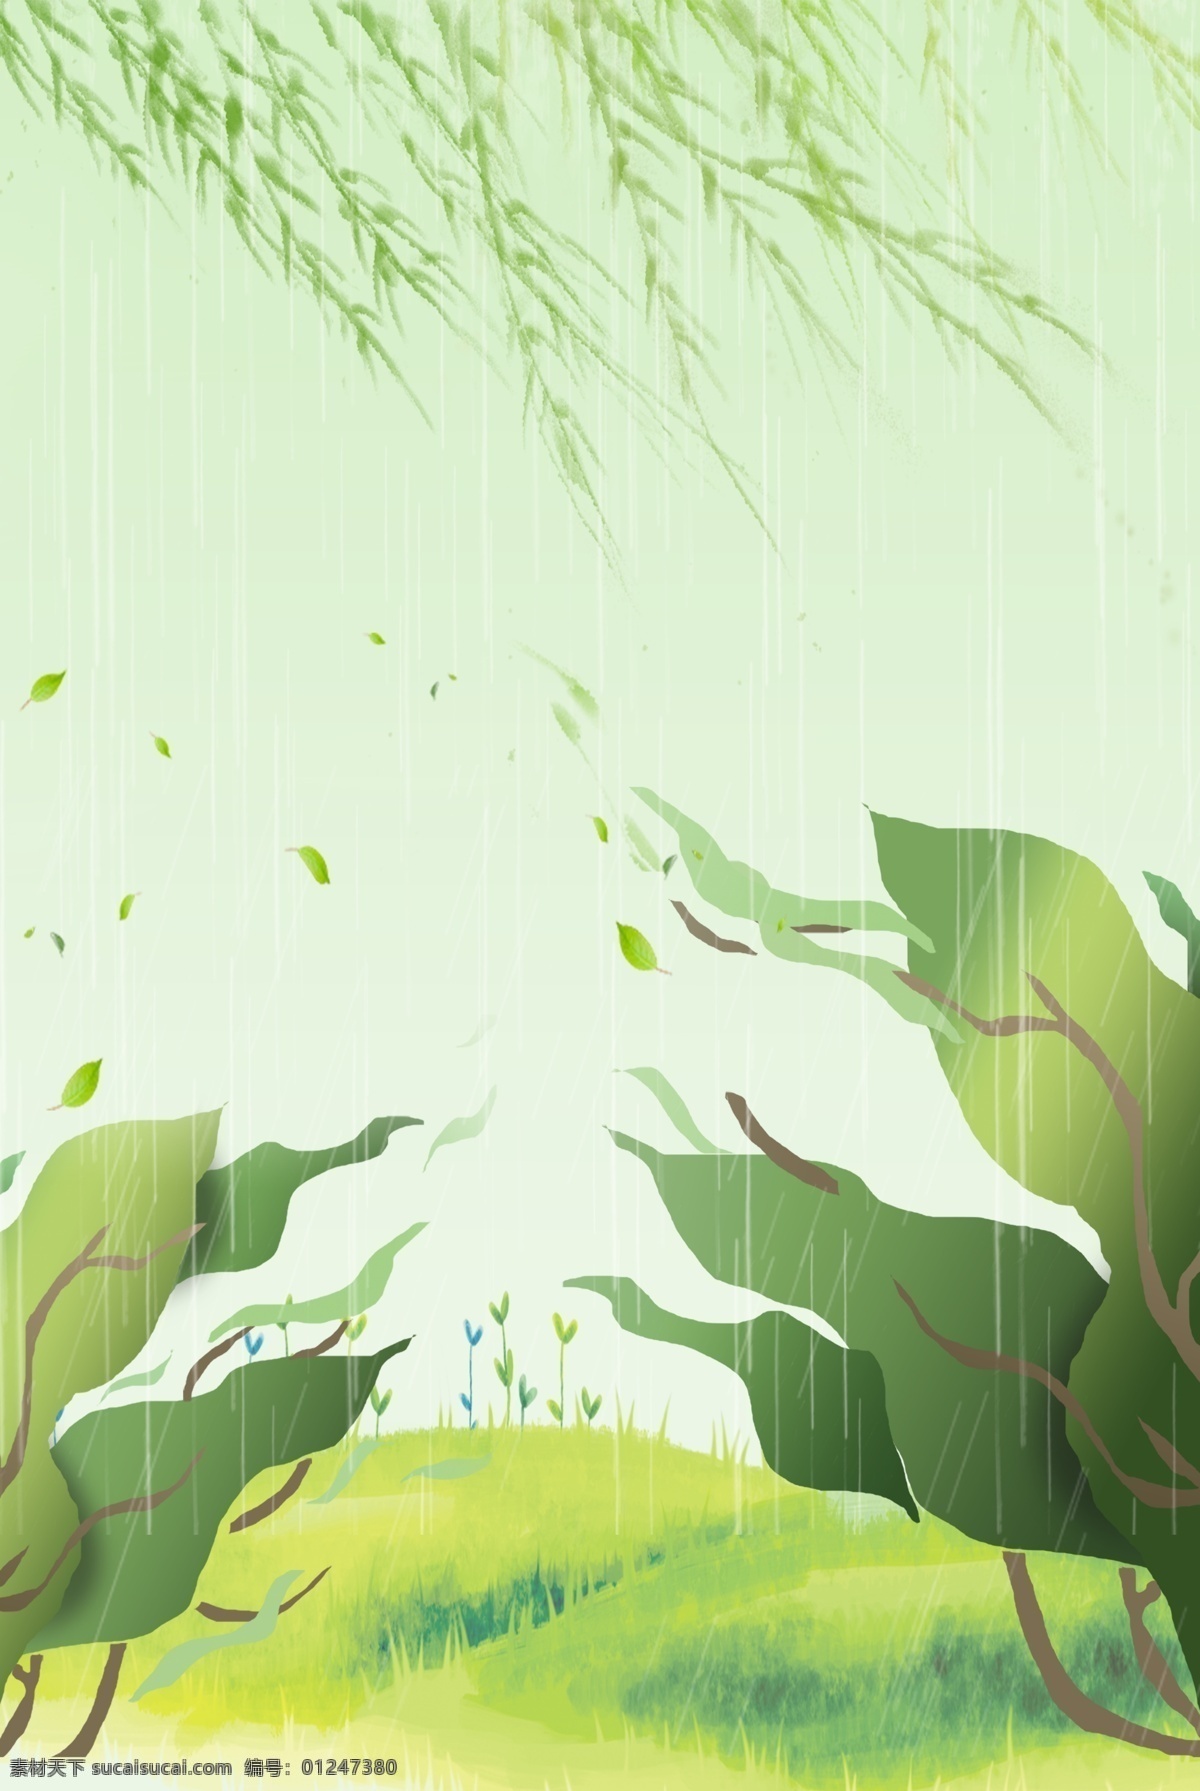 雨季 清新 叶子 漂浮 柳枝 广告 背景 叶子背景